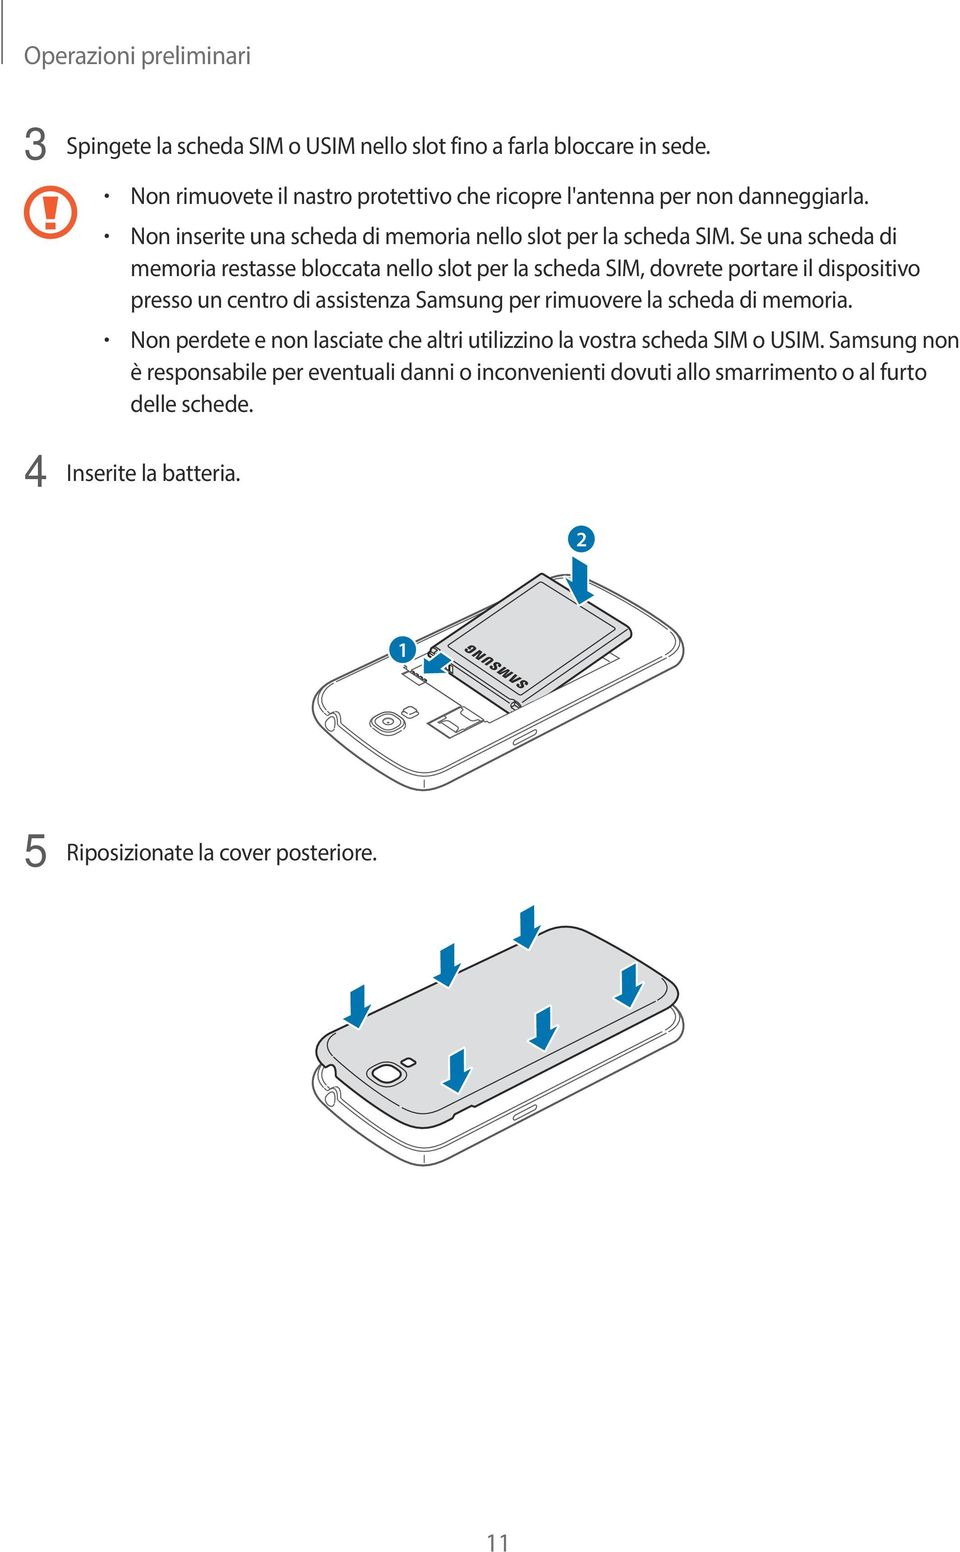 Se una scheda di memoria restasse bloccata nello slot per la scheda SIM, dovrete portare il dispositivo presso un centro di assistenza Samsung per rimuovere la scheda